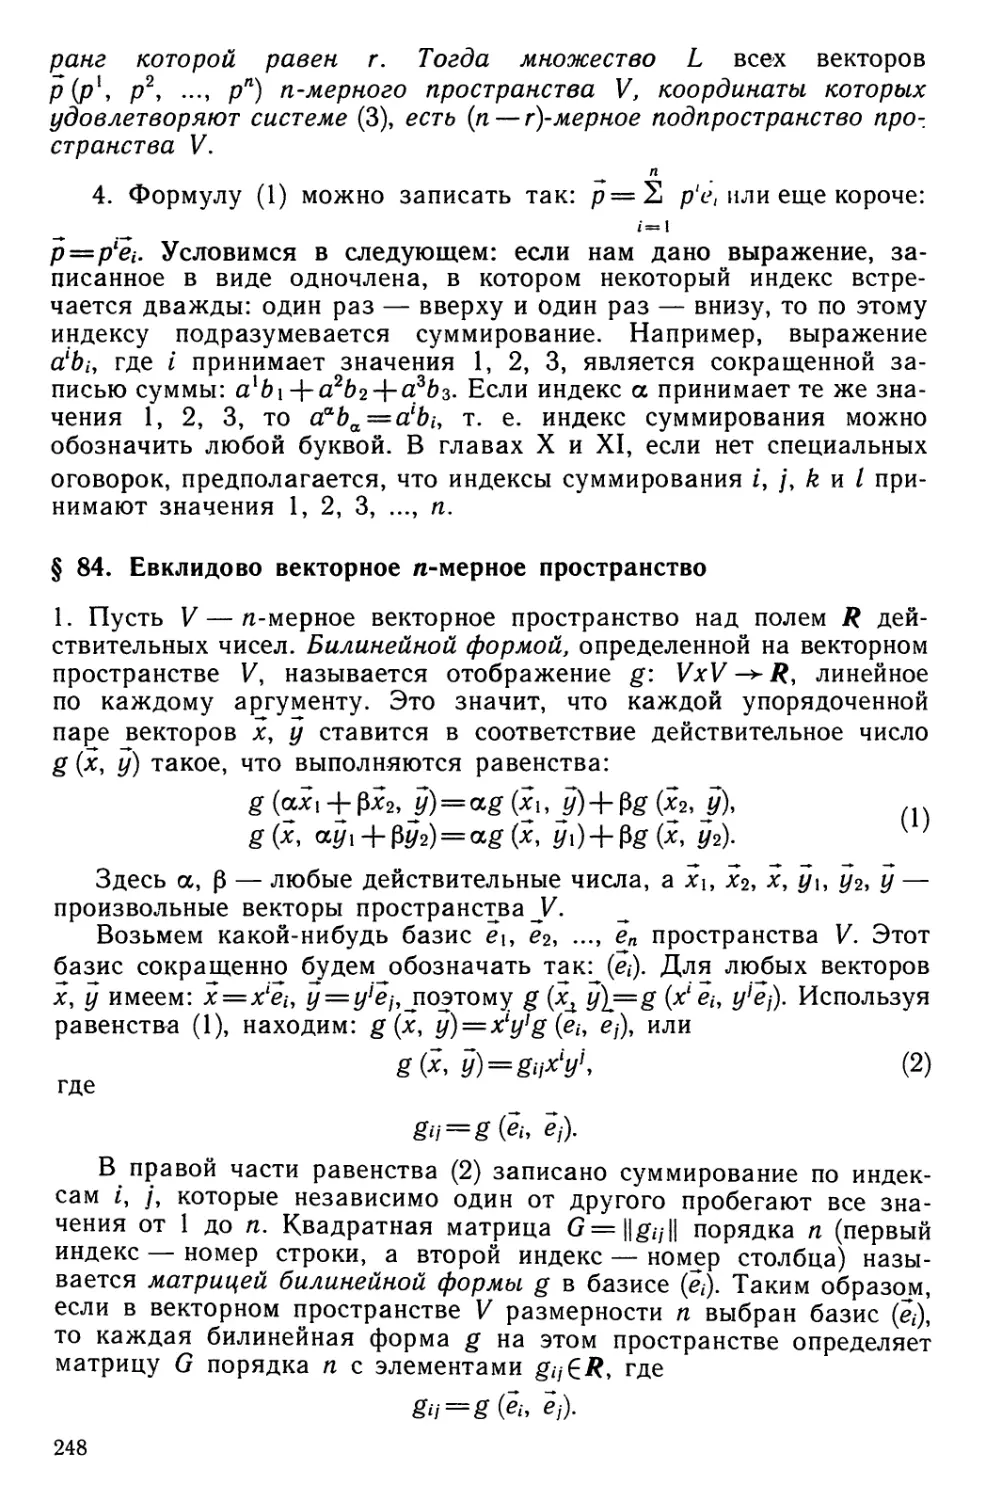 § 84. Евклидово векторное «-мерное пространство